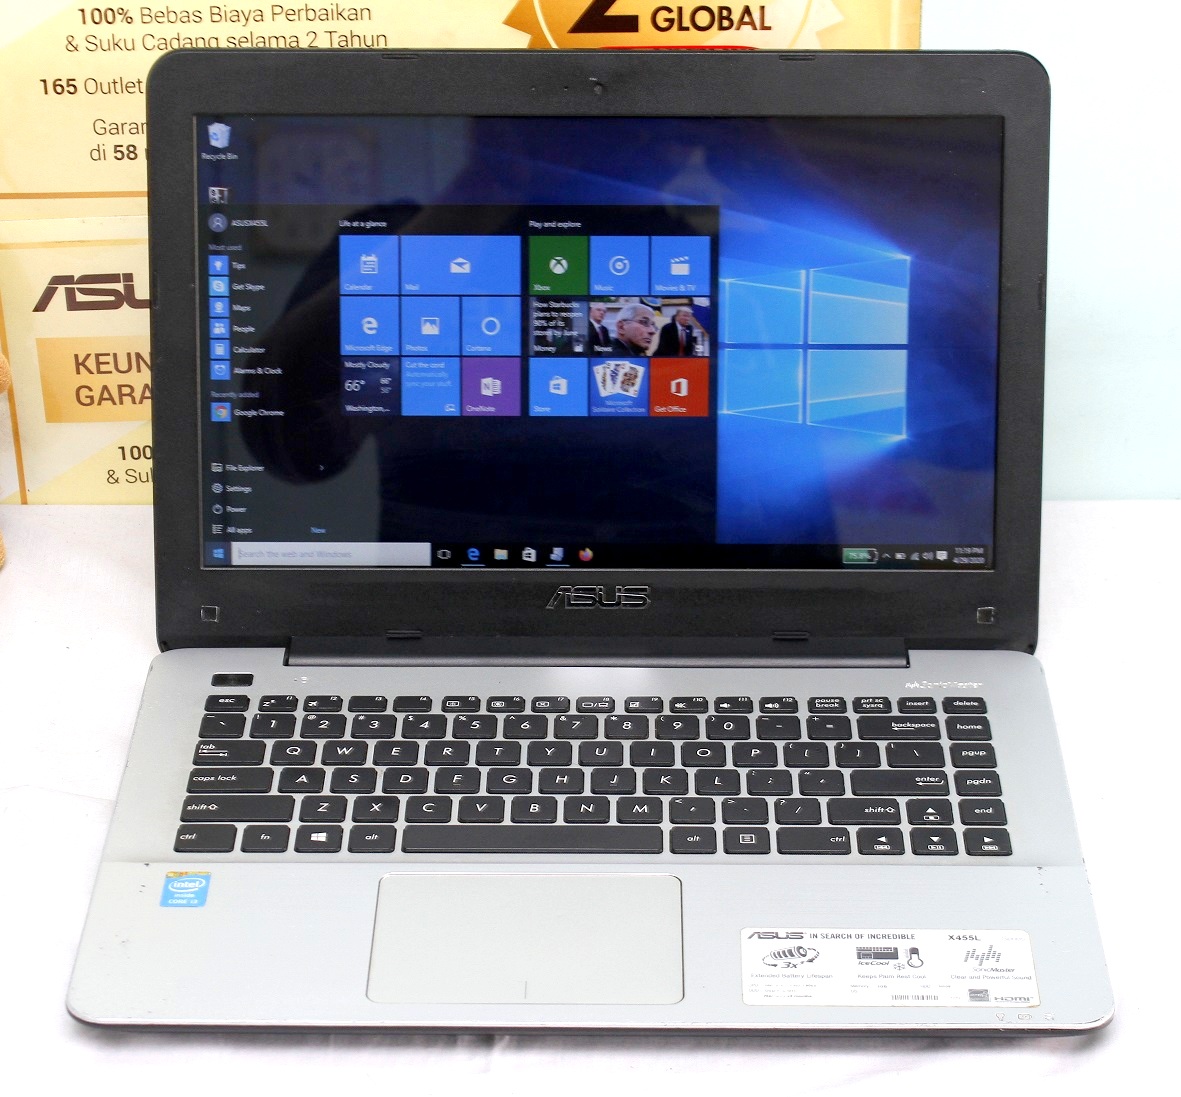 Laptop bekas Asus X455L Core i3 | Jual Beli Laptop Second dan Kamera